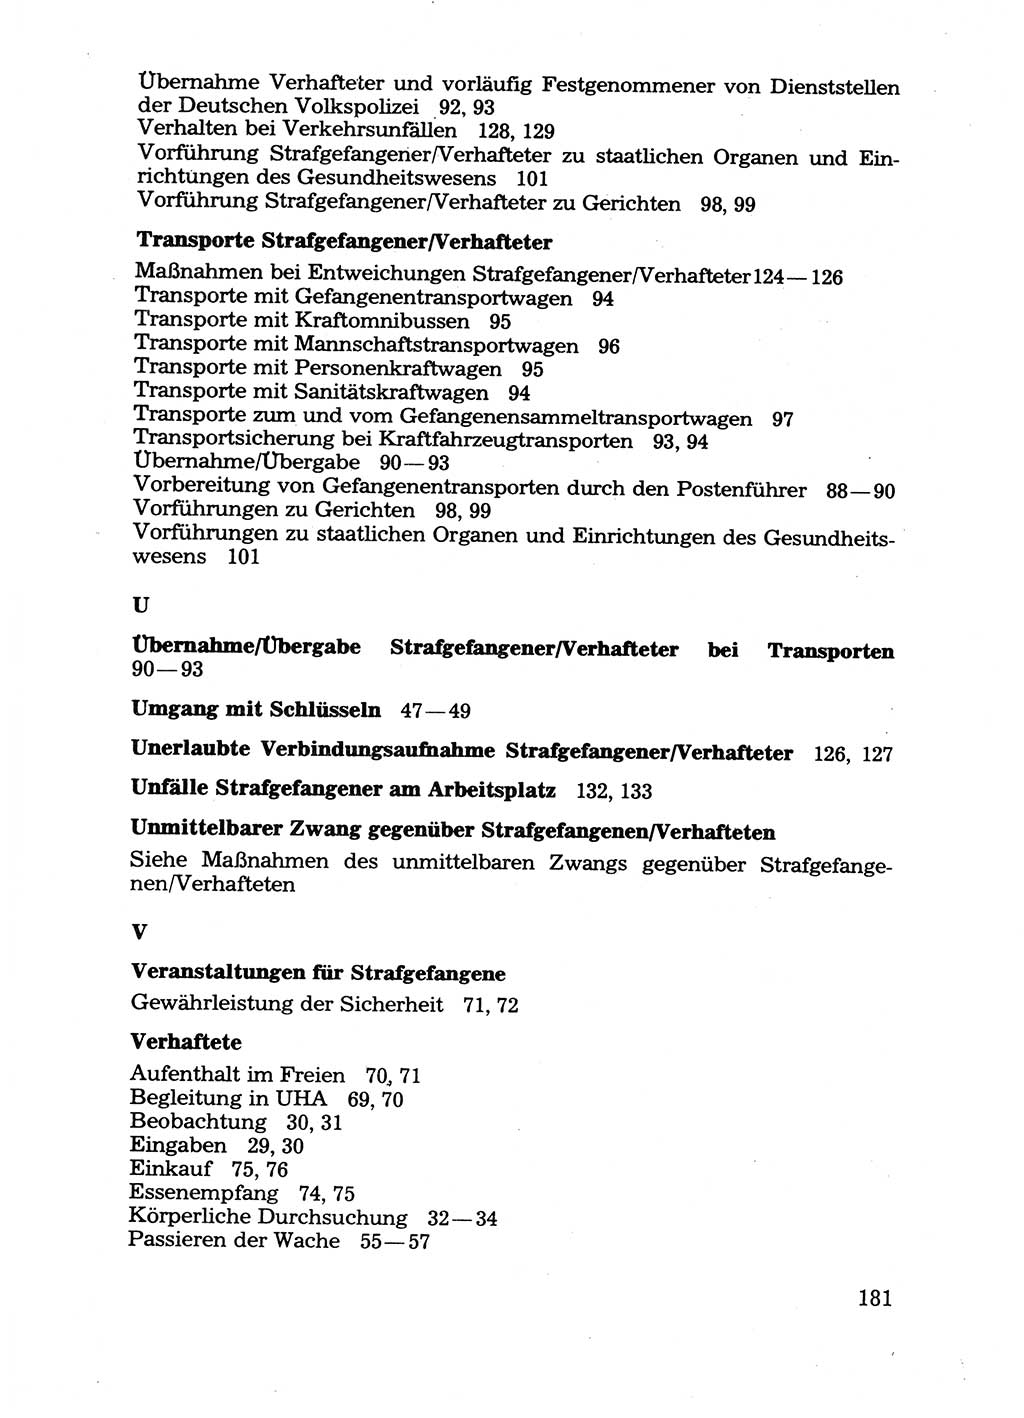 Handbuch für operative Dienste, Abteilung Strafvollzug (SV) [Ministerium des Innern (MdI) Deutsche Demokratische Republik (DDR)] 1981, Seite 181 (Hb. op. D. Abt. SV MdI DDR 1981, S. 181)